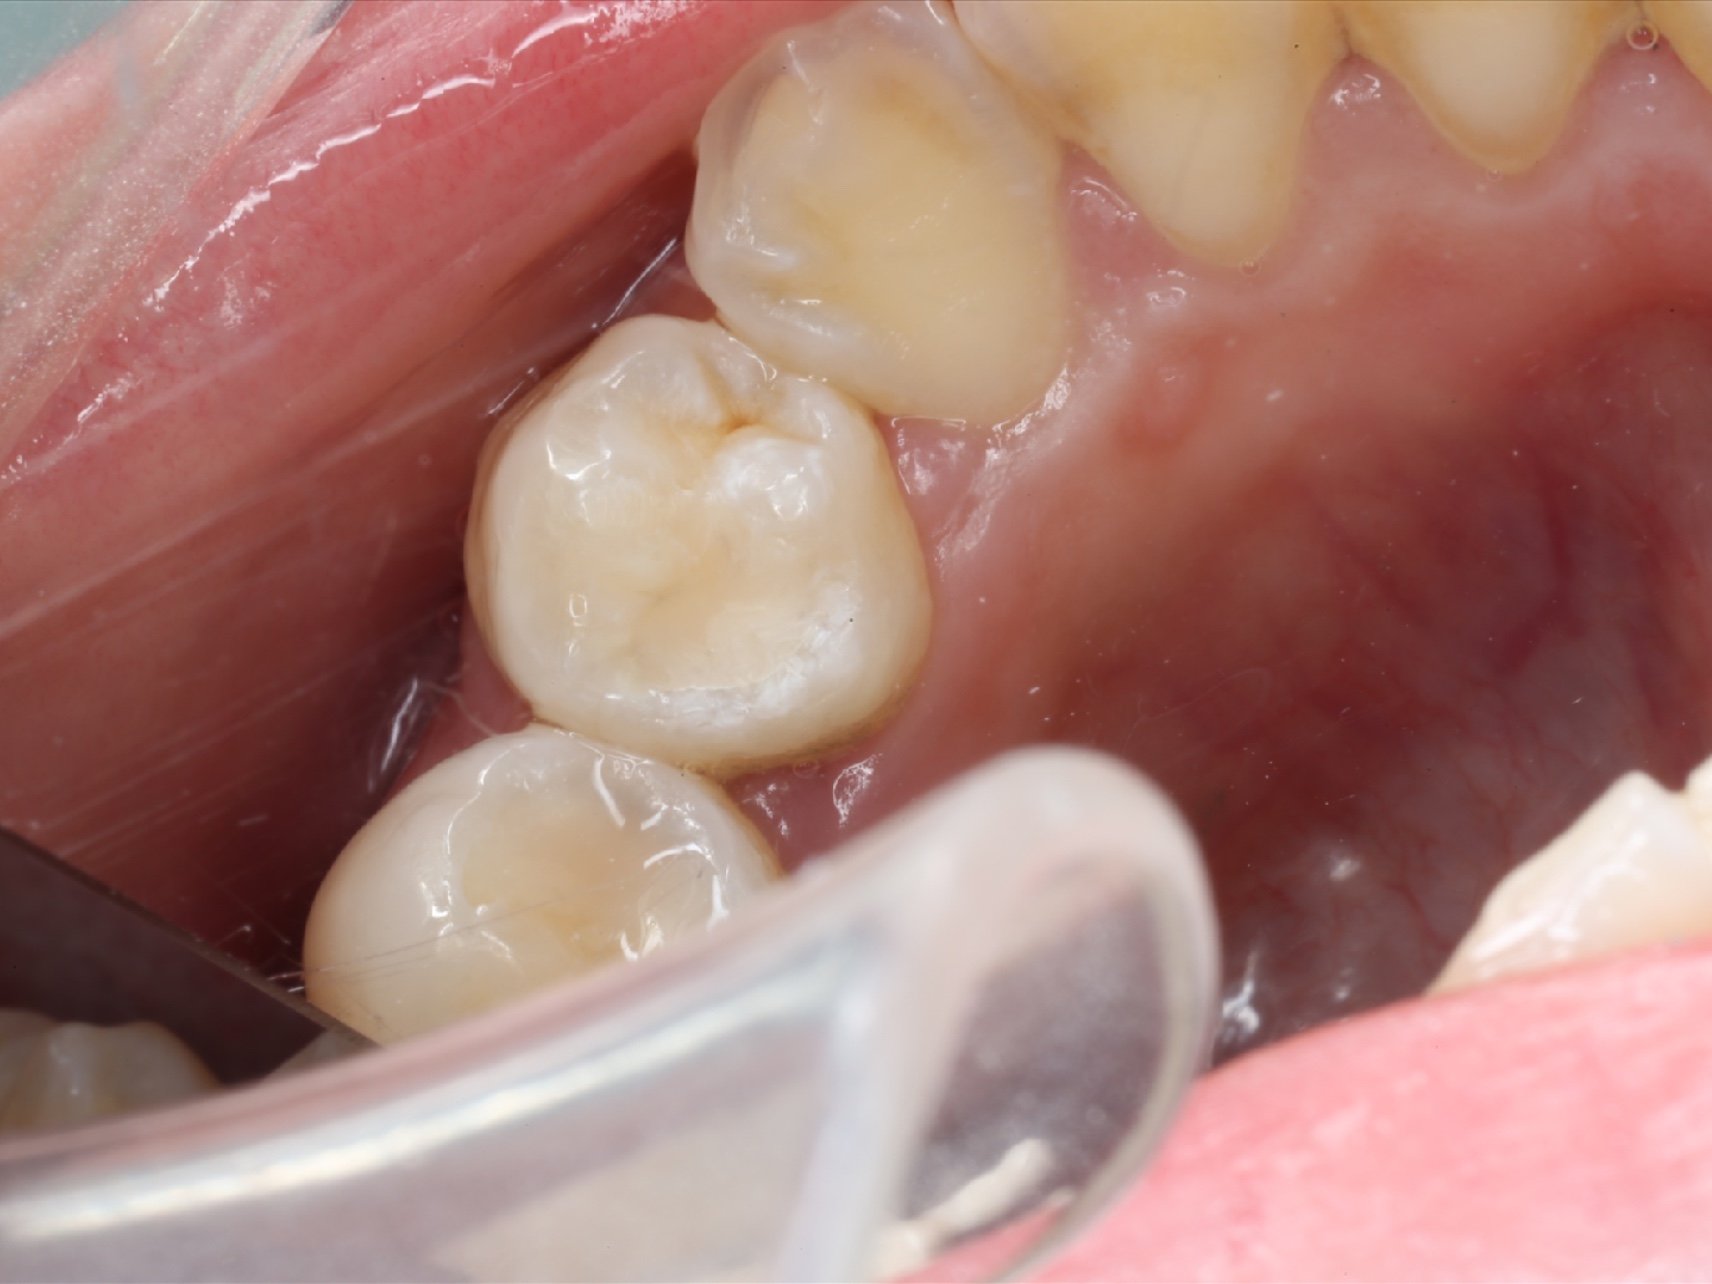 地方用银汞合金补的牙齿材料要掉了,这次来到杨浦区的一家牙博士补牙